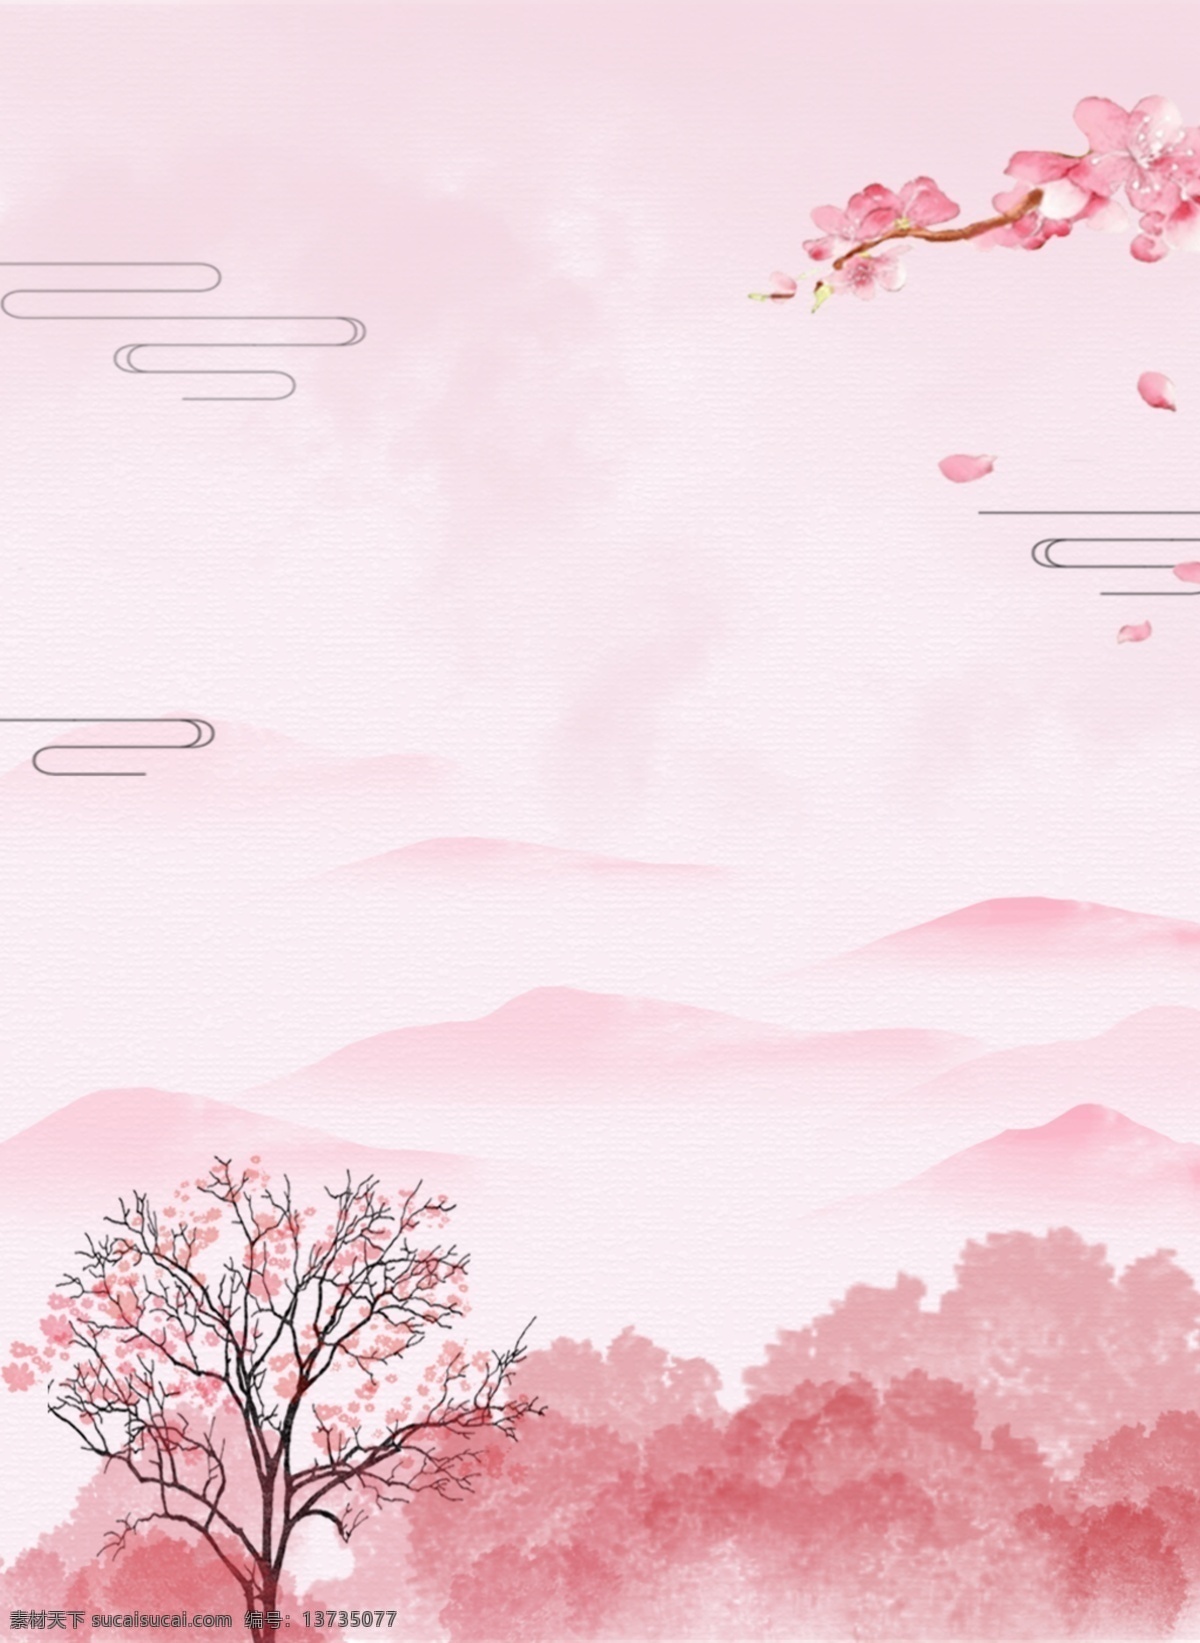 桃花背景素材 桃花 背景 远山 粉色 浪漫 平面设计素材 分层背景